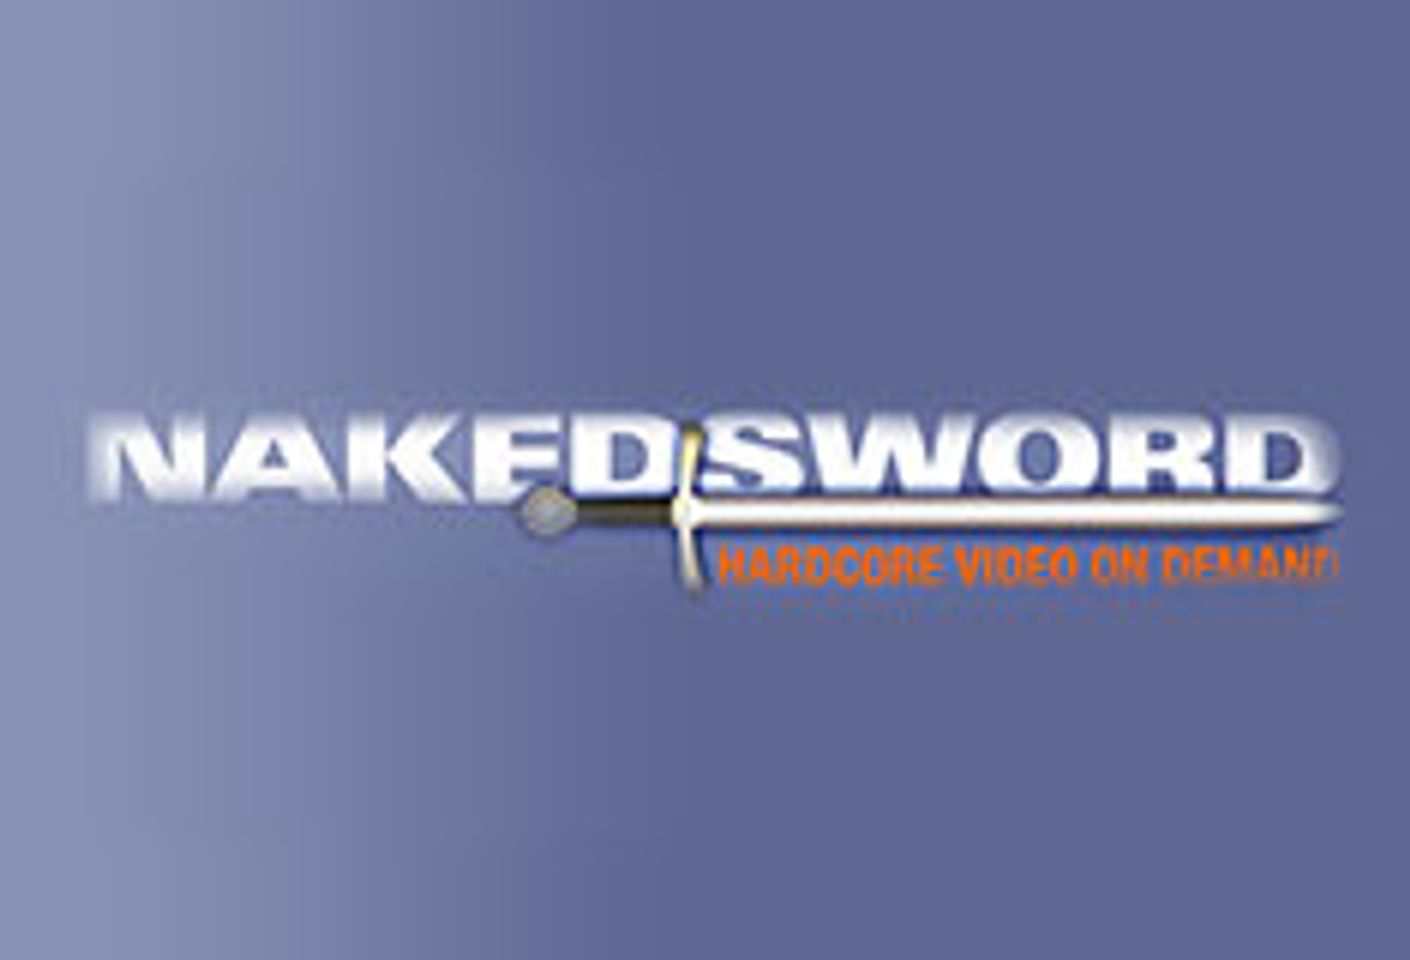 NakedSword, Top Studios Raise Money for Charities